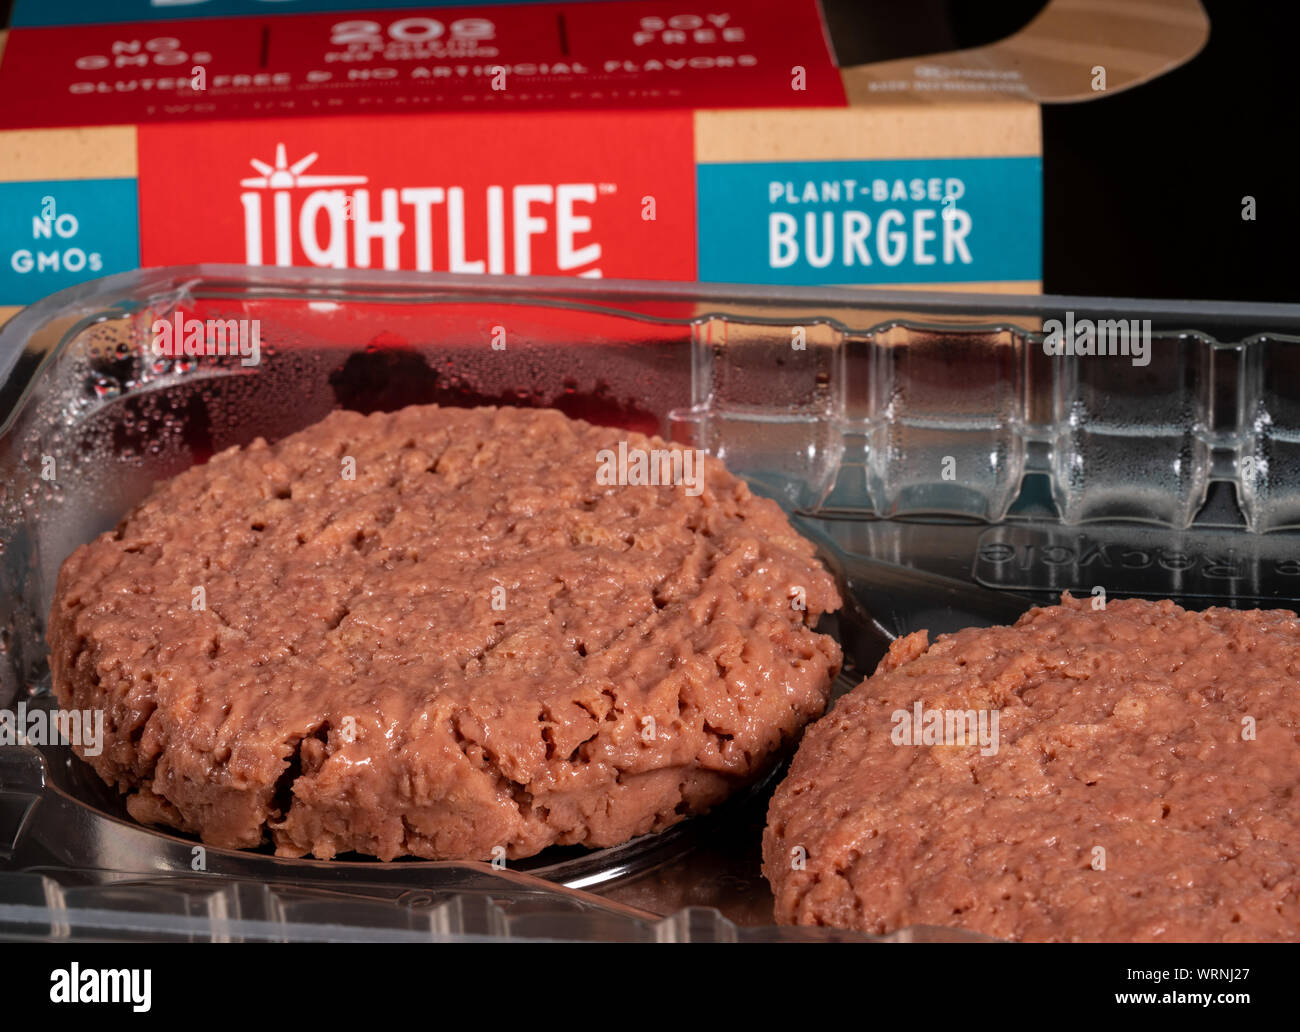 Impianto Lightlife burger di base nel pacchetto di due polpette Foto Stock